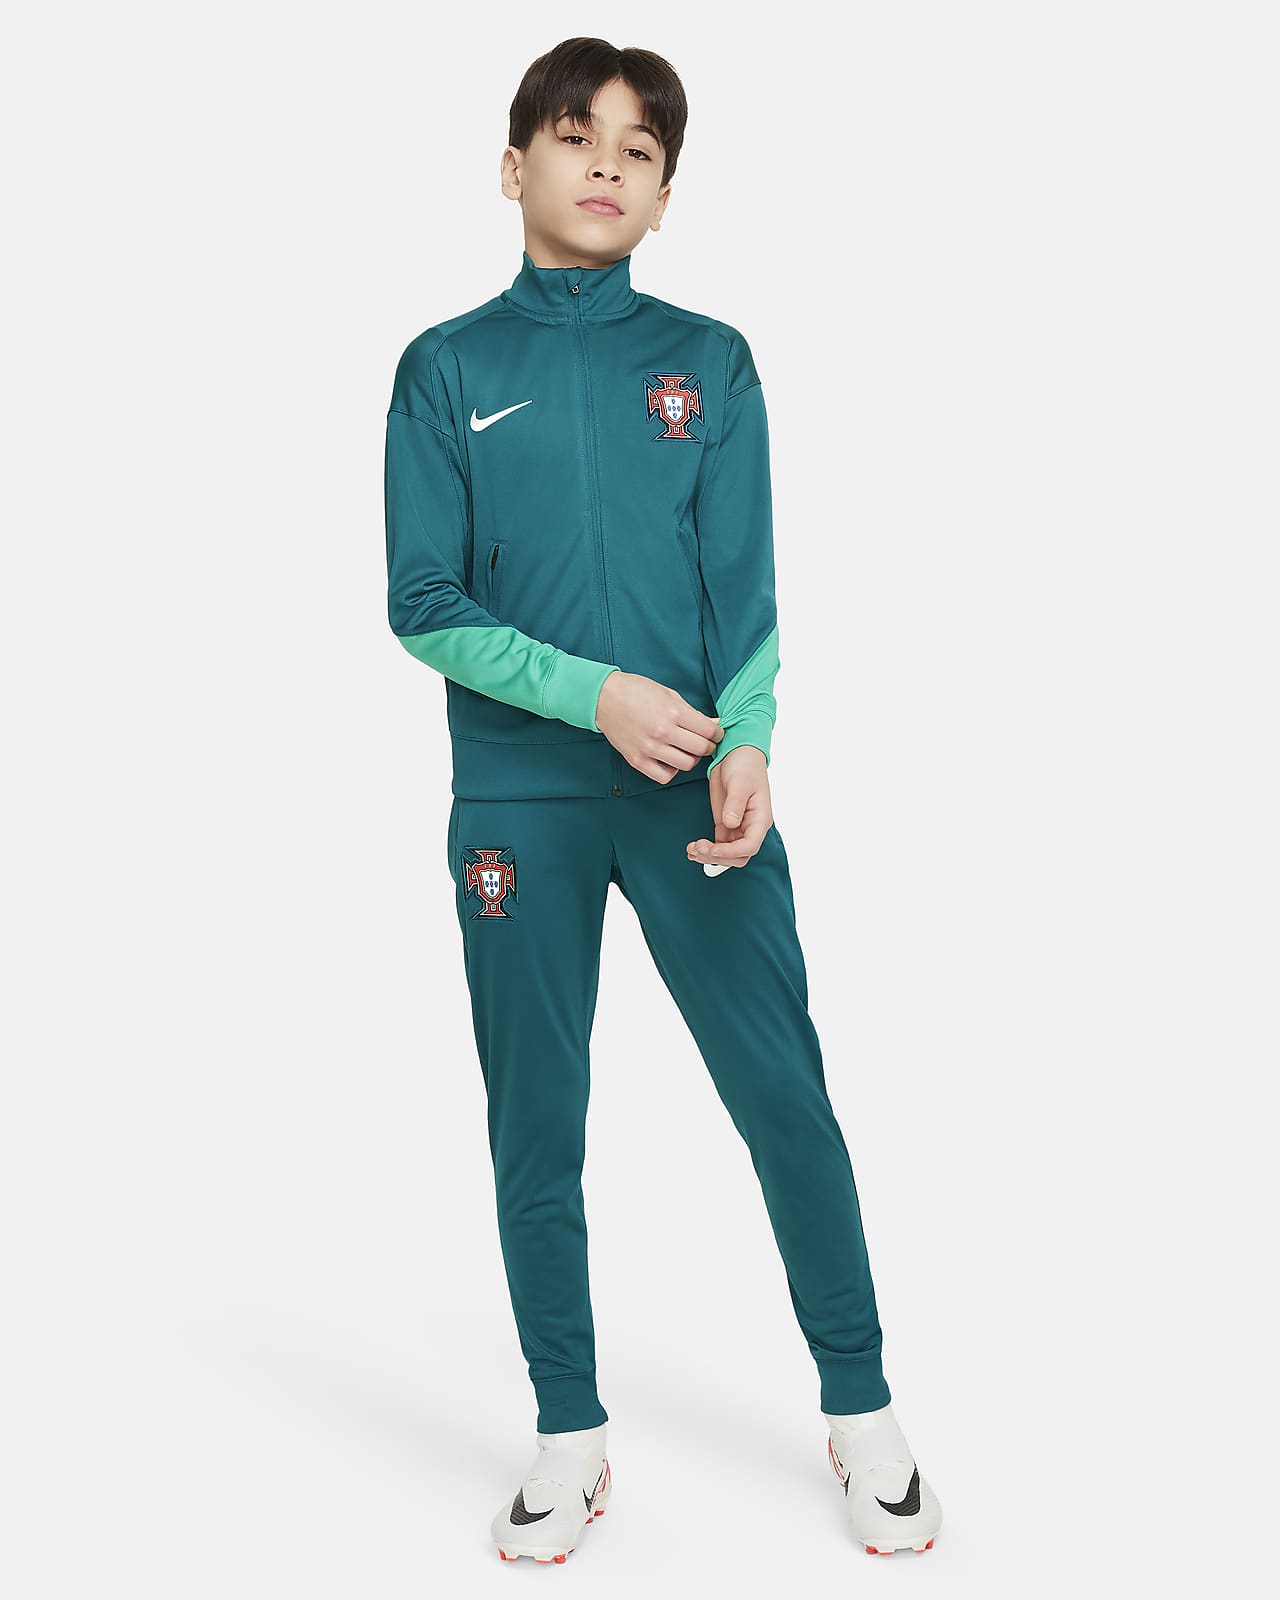 Portugália Strike Nike Dri-FIT kötött futballtréningruha nagyobb gyerekeknek